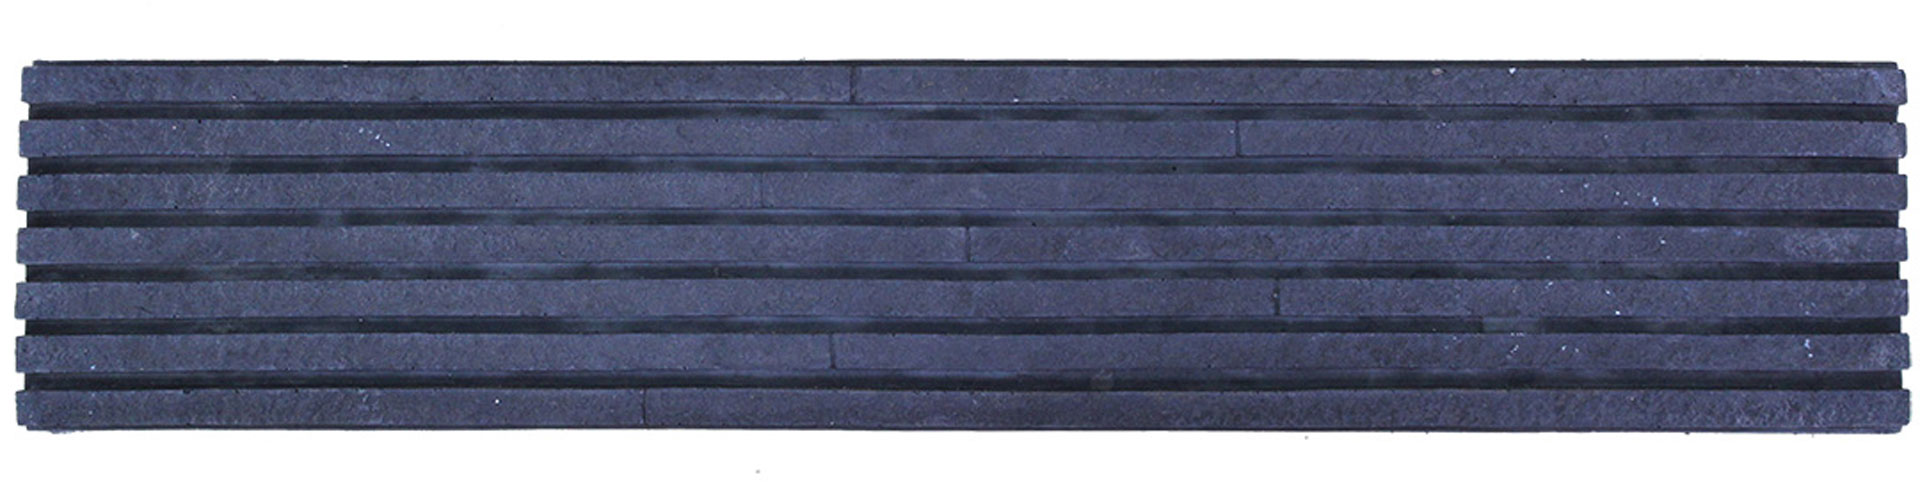 กระเบื้องคอนกรีตตกแต่งผนัง เอสซีจี รุ่น ทรูเซนเซชั่น ไลน์ ขนาด 10x50x3 ซม. สีดำ